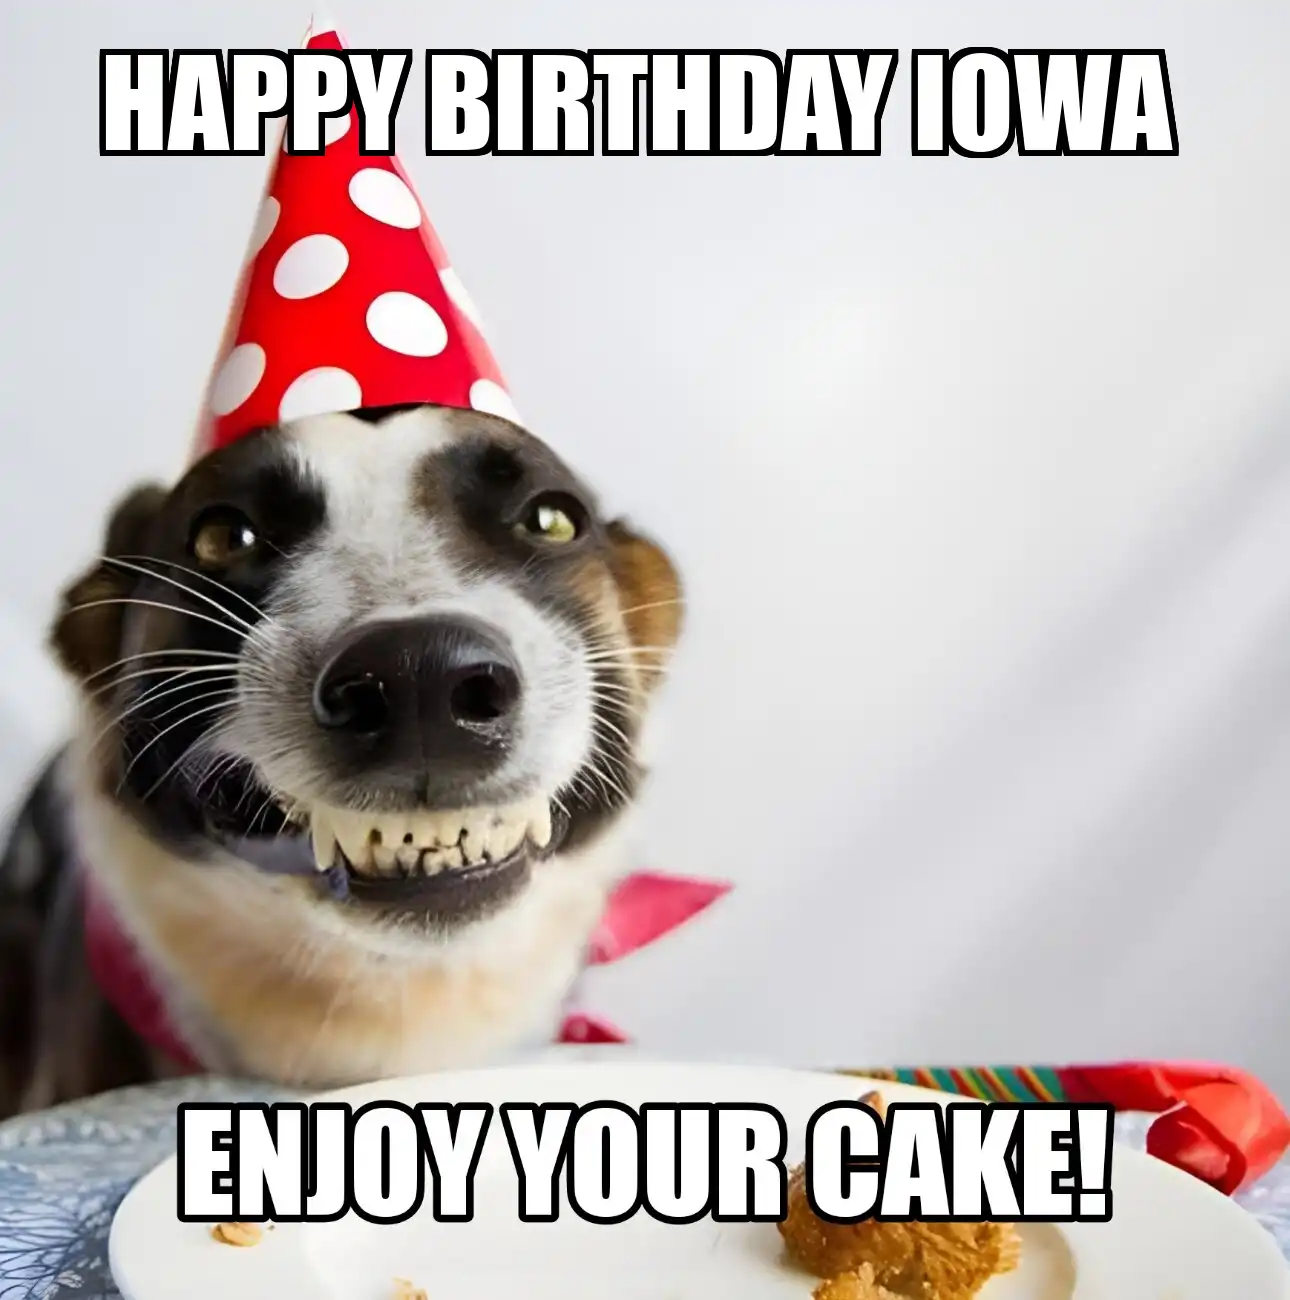 Happy Birthday Iowa Enjoy Your Cake Dog Meme